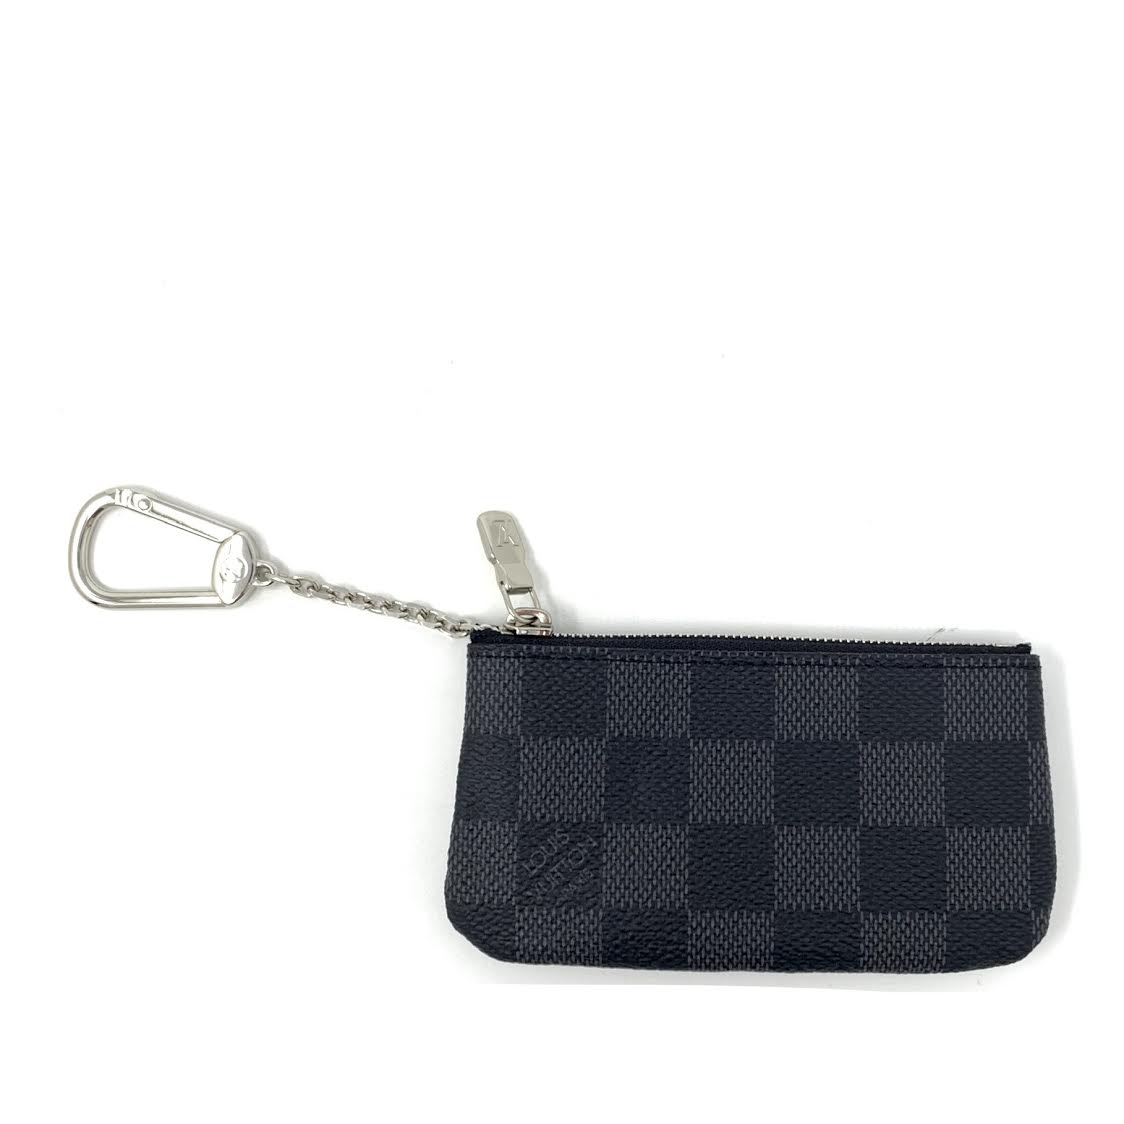 Louis Vuitton Damier Graphite Key Pouch w/ Tags